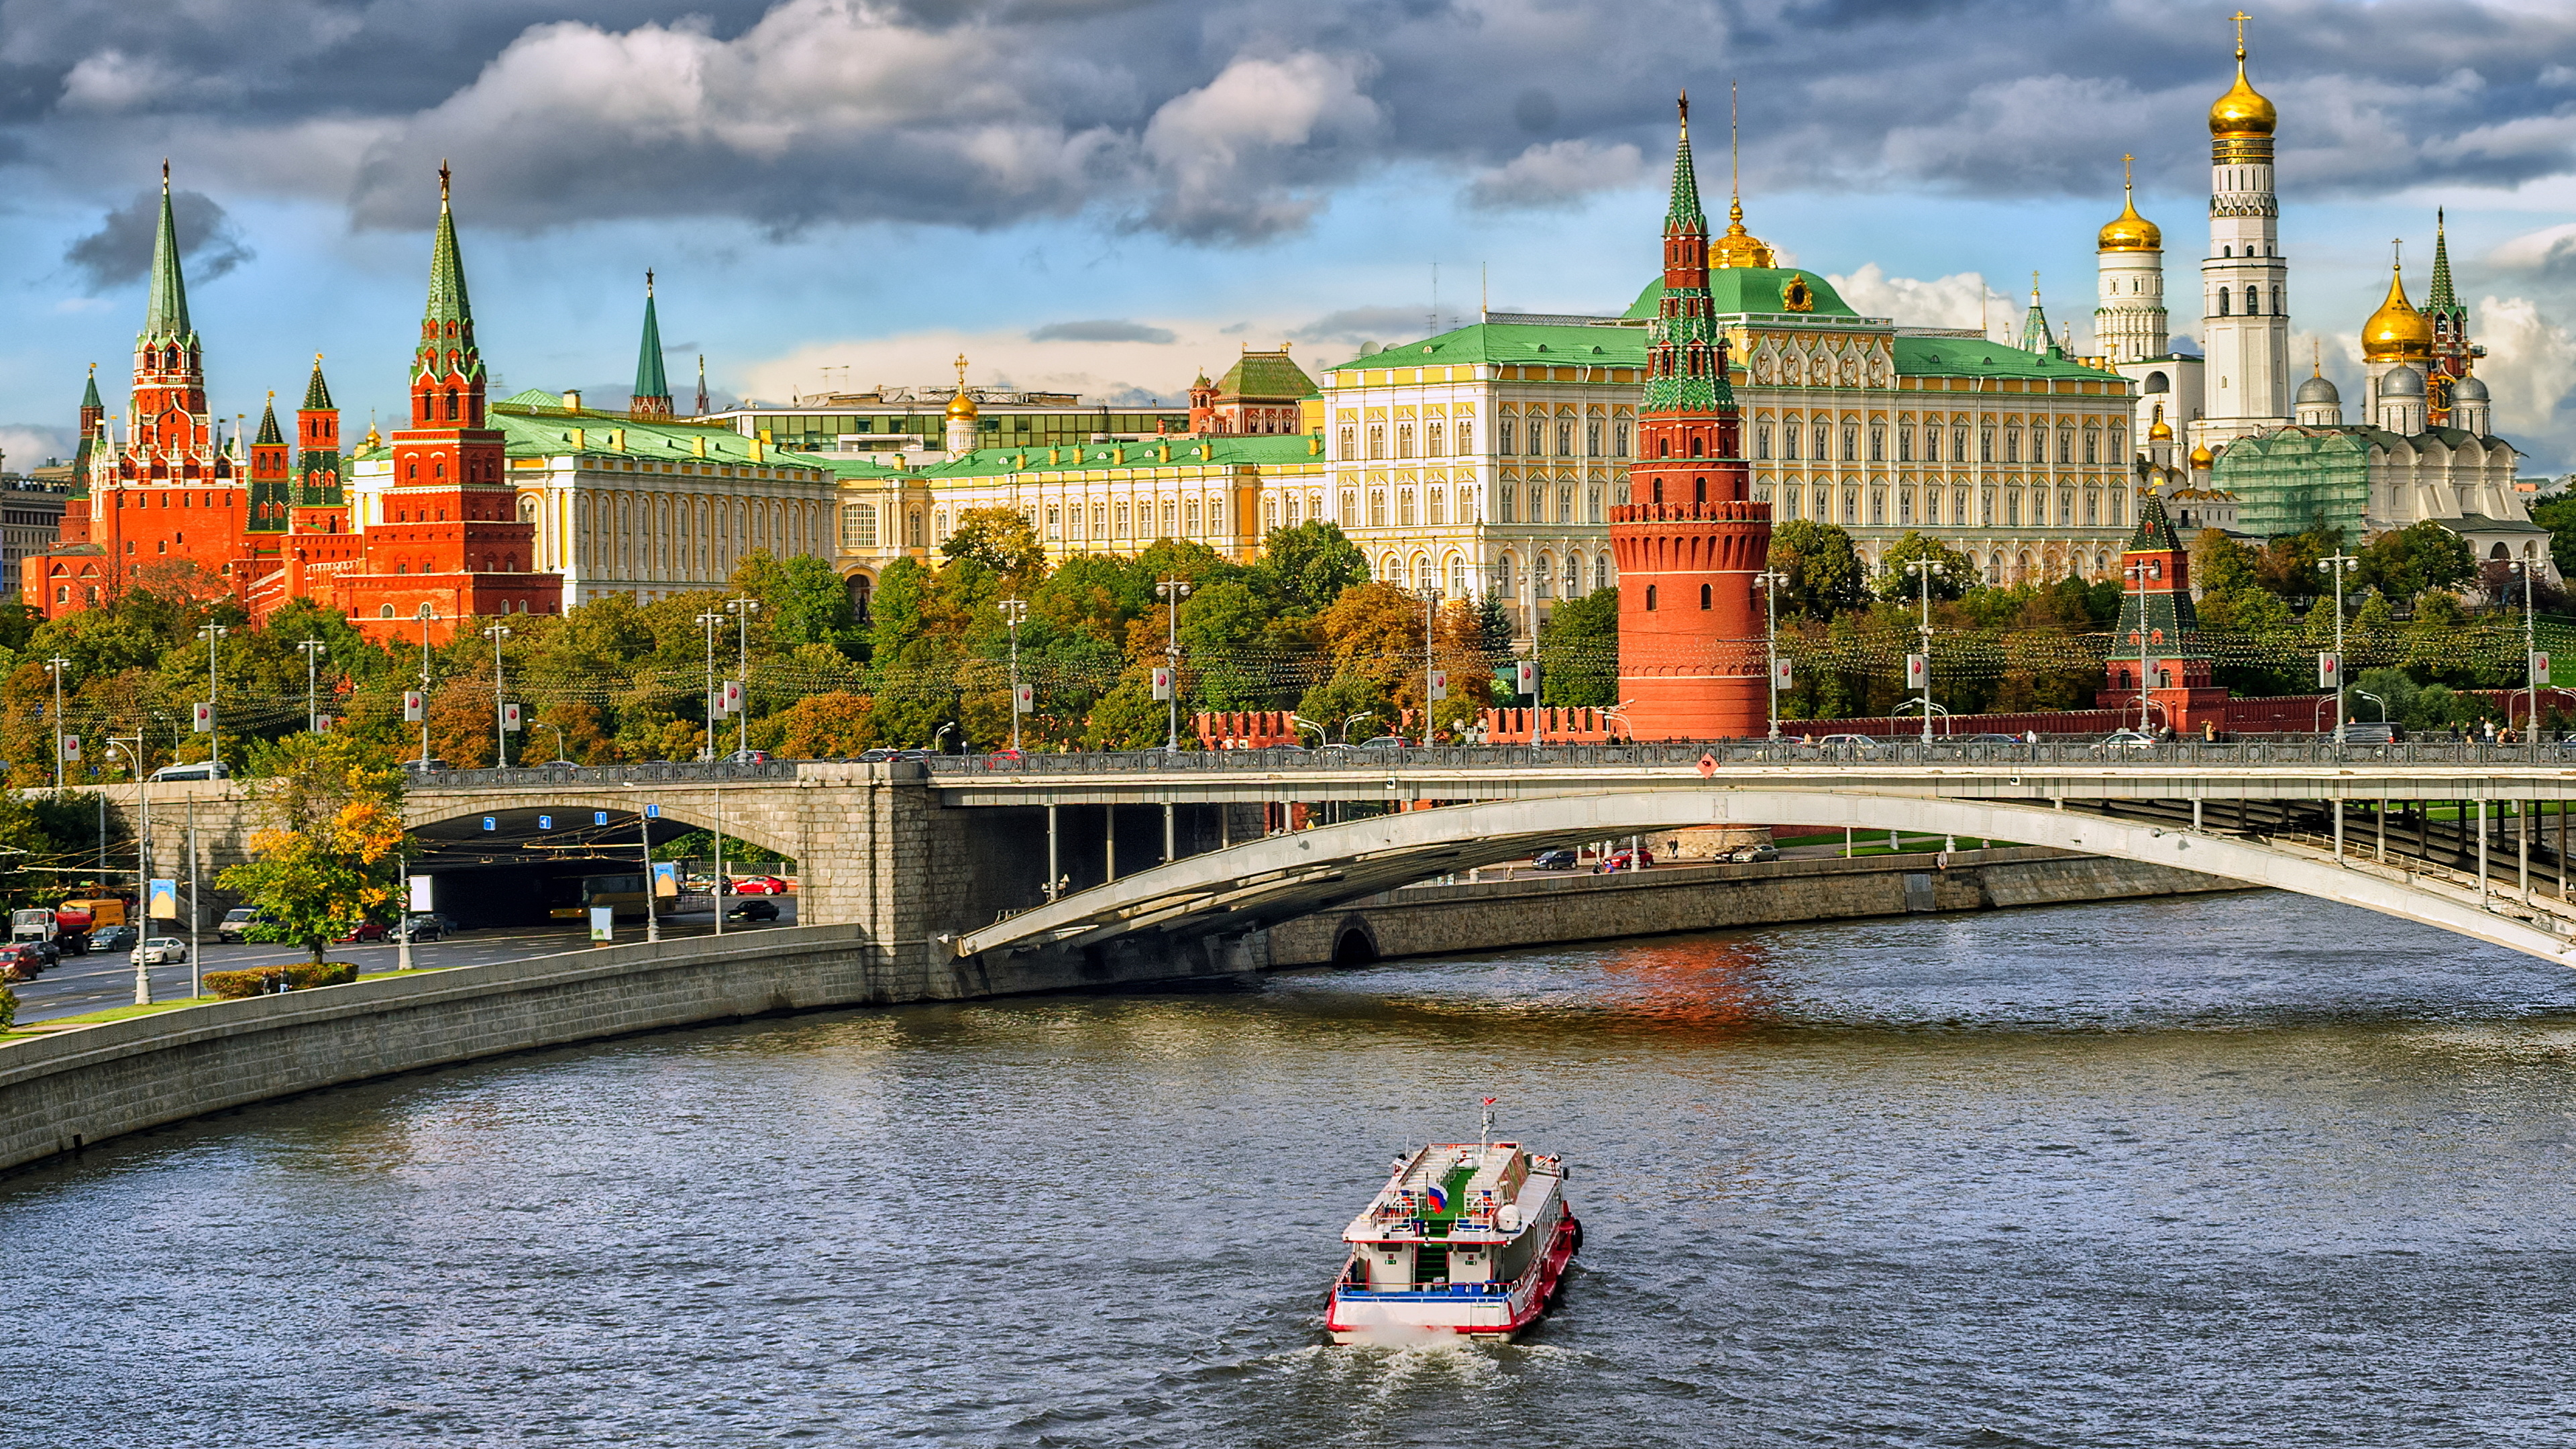 壁紙 3840x2160 モスクワ クレムリン 橋 寺院 川 ロシア モーターボート 運河 宮殿 都市 ダウンロード 写真